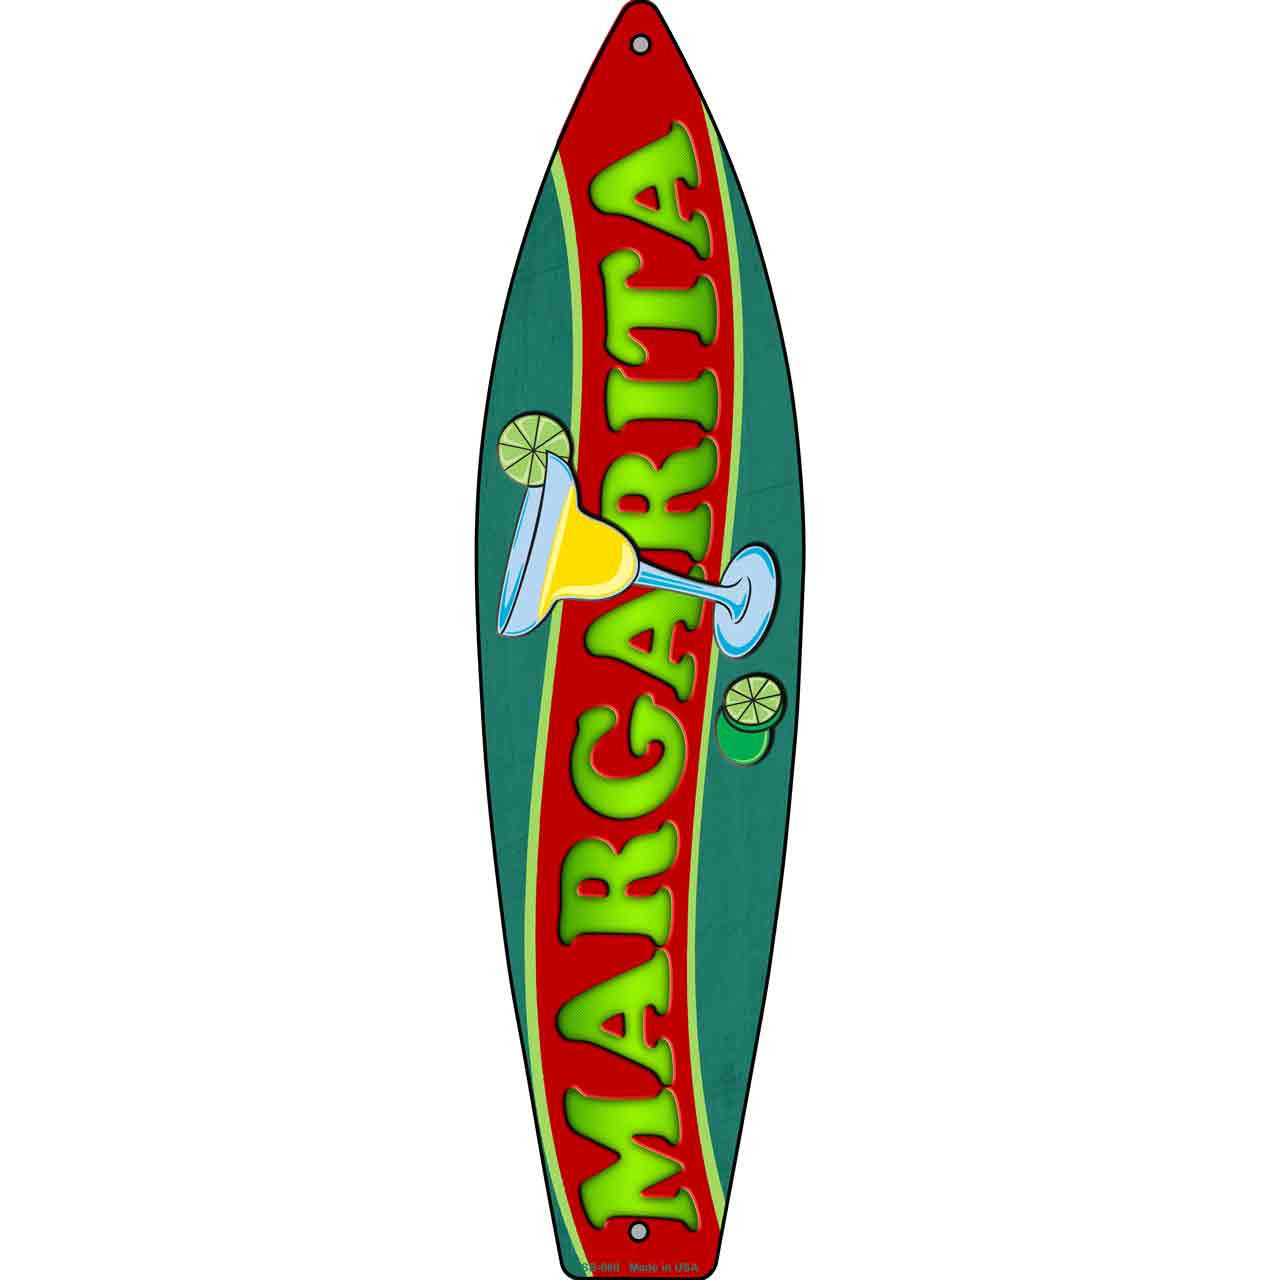 Margarita 17" x 4.5" Metal Novelty Surfboard Sign SB-060